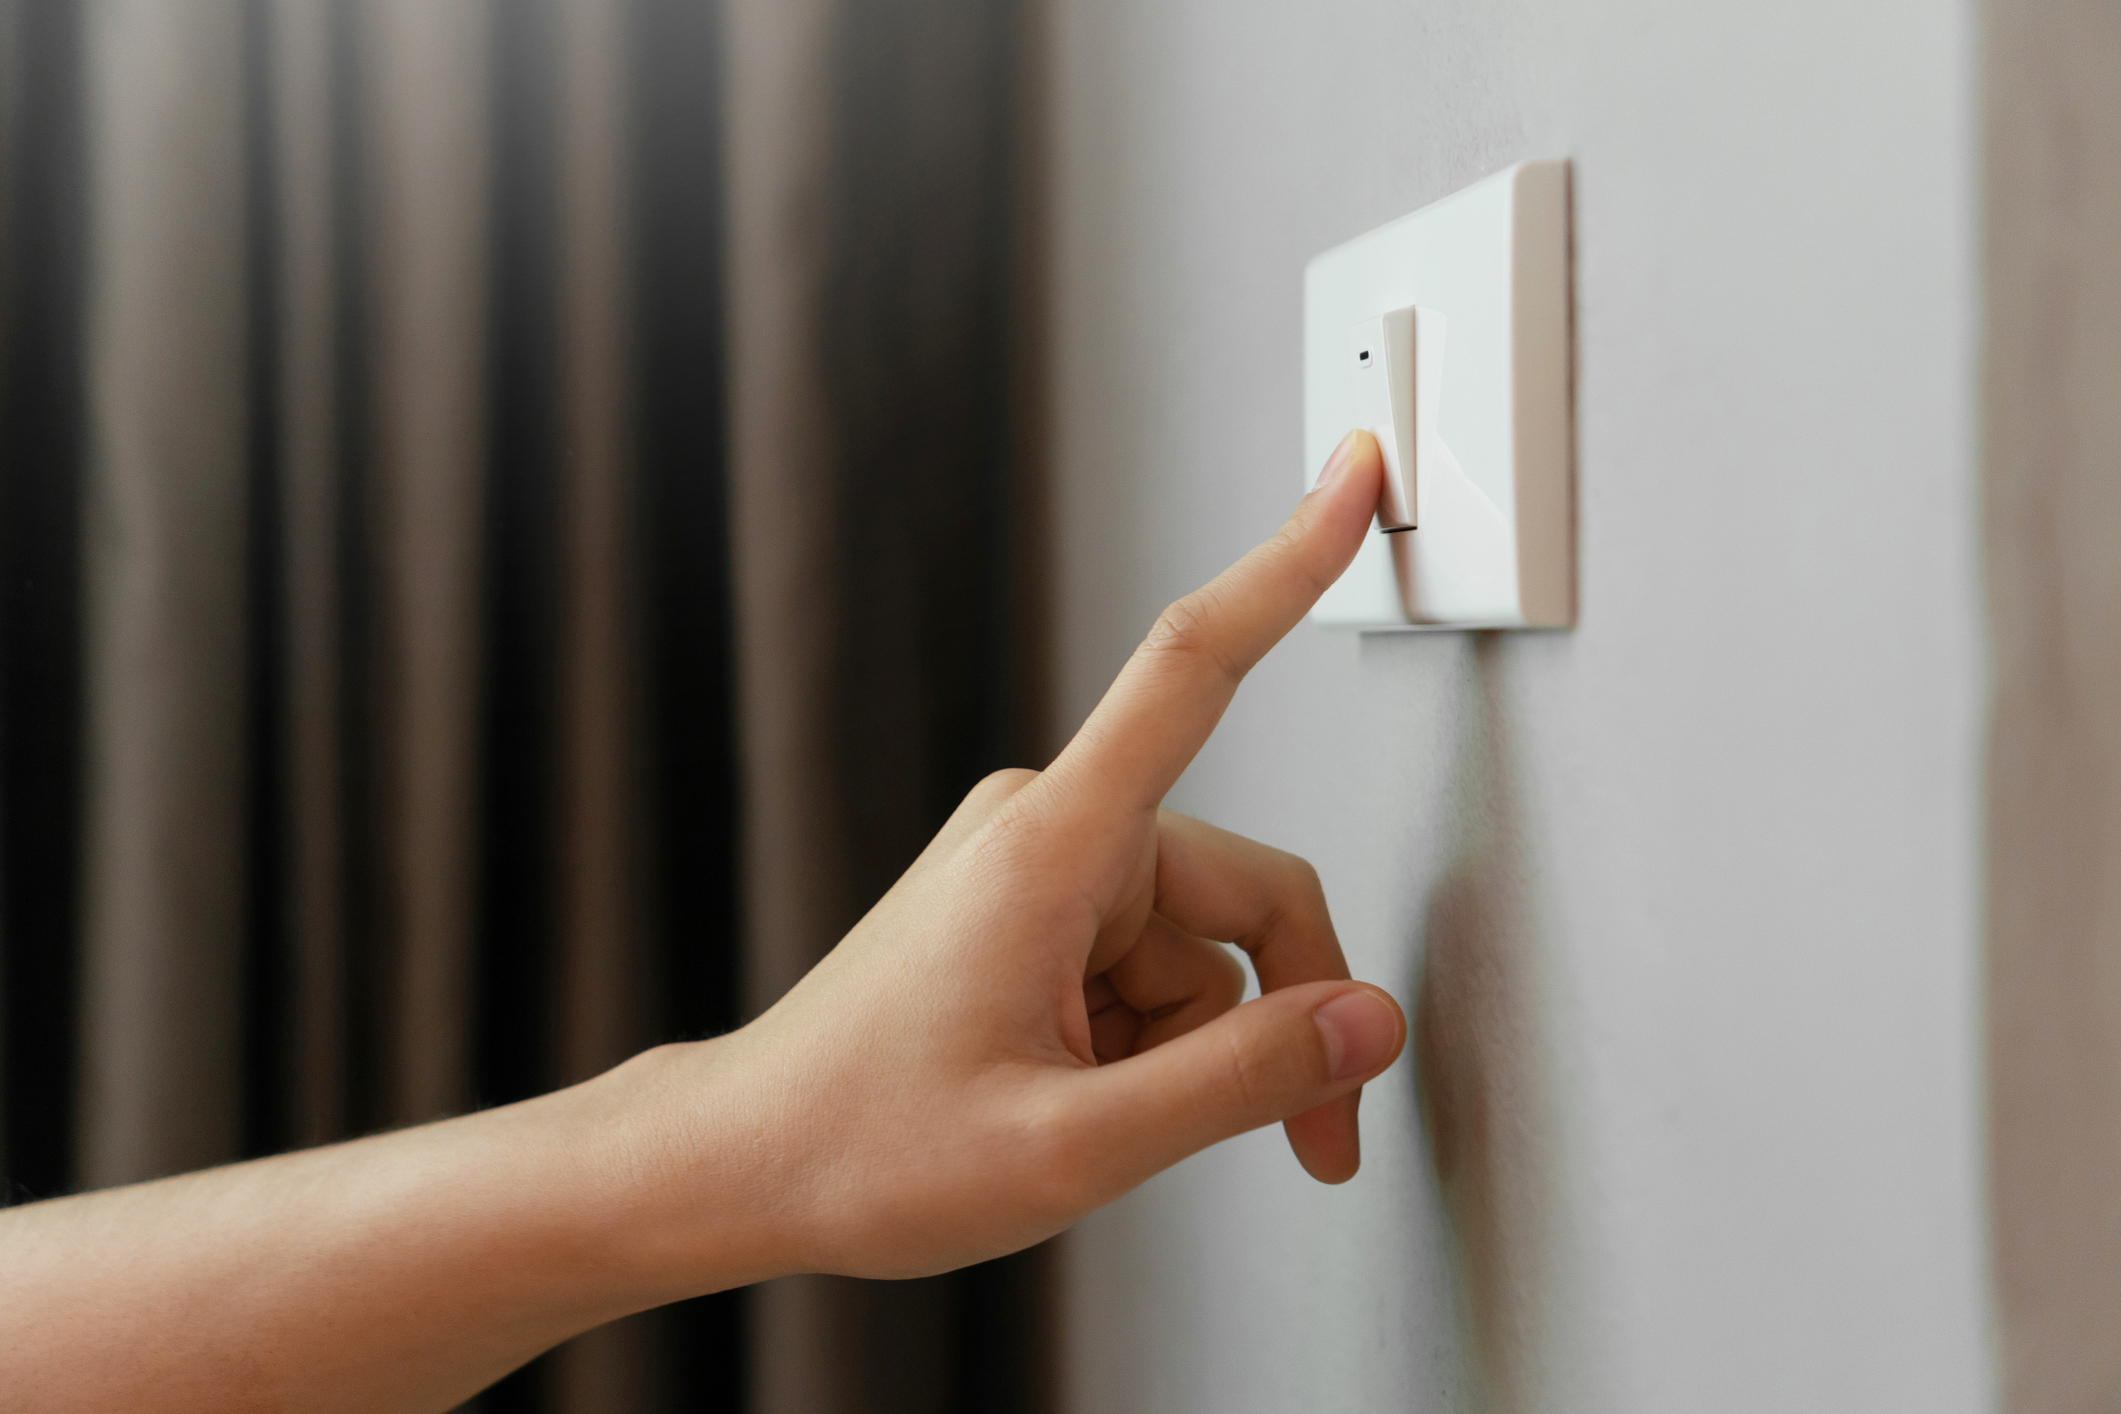 Vols pagar menys en la tarifa de la llum? Consells per a estalviar electricitat a casa El Periòdic d'Ontinyent - Noticies a Ontinyent